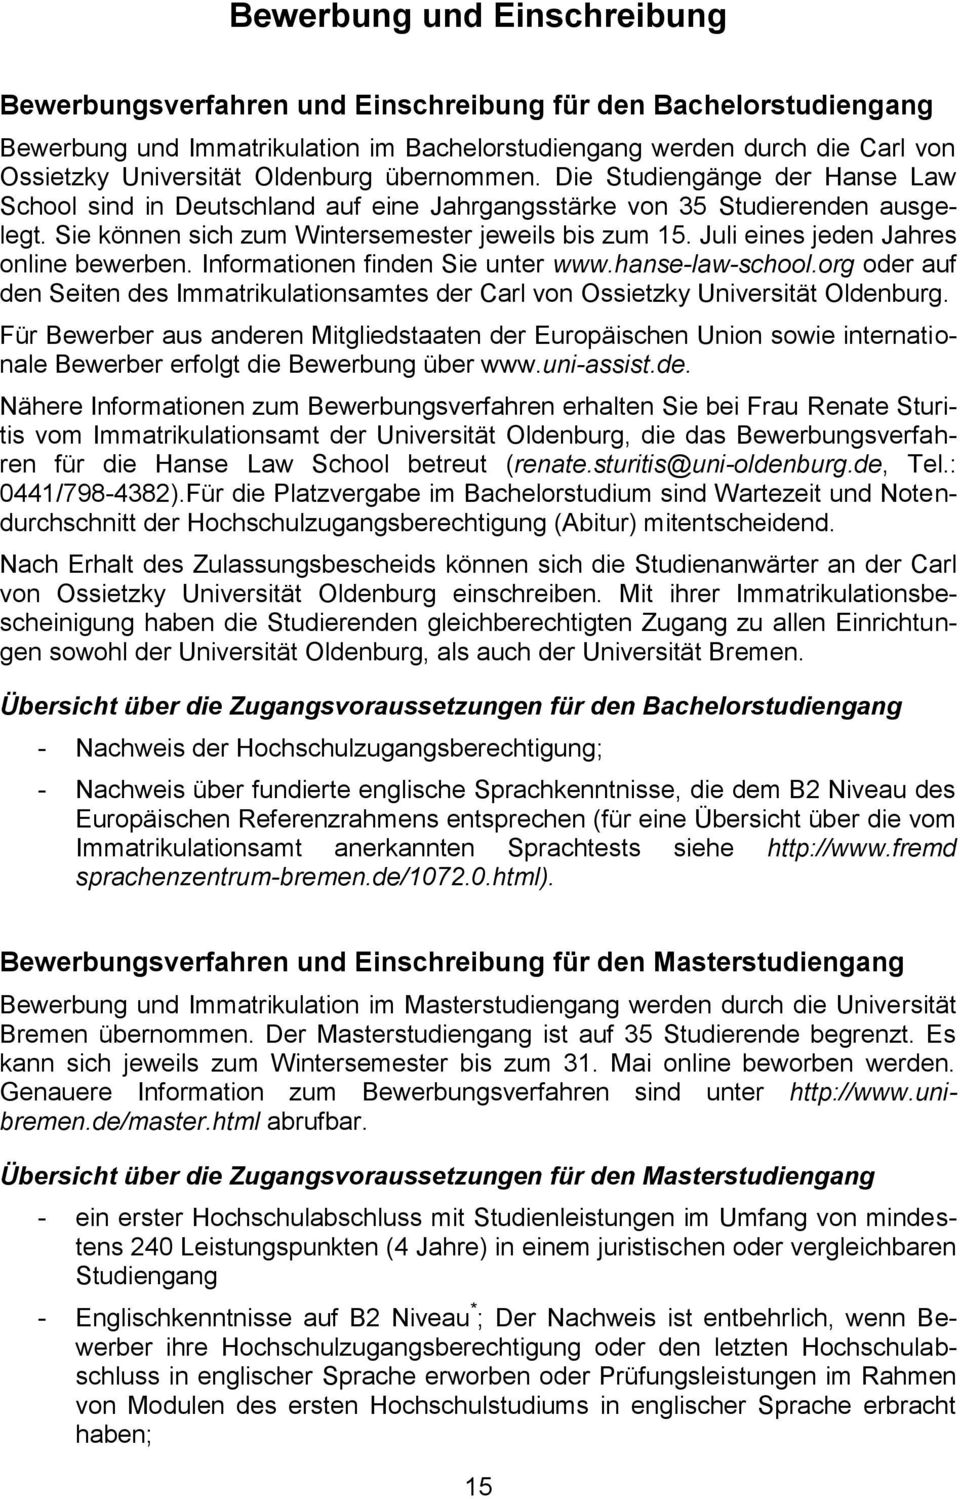 Juli eines jeden Jahres online bewerben. Informationen finden Sie unter www.hanse-law-school.org oder auf den Seiten des Immatrikulationsamtes der Carl von Ossietzky Universität Oldenburg.